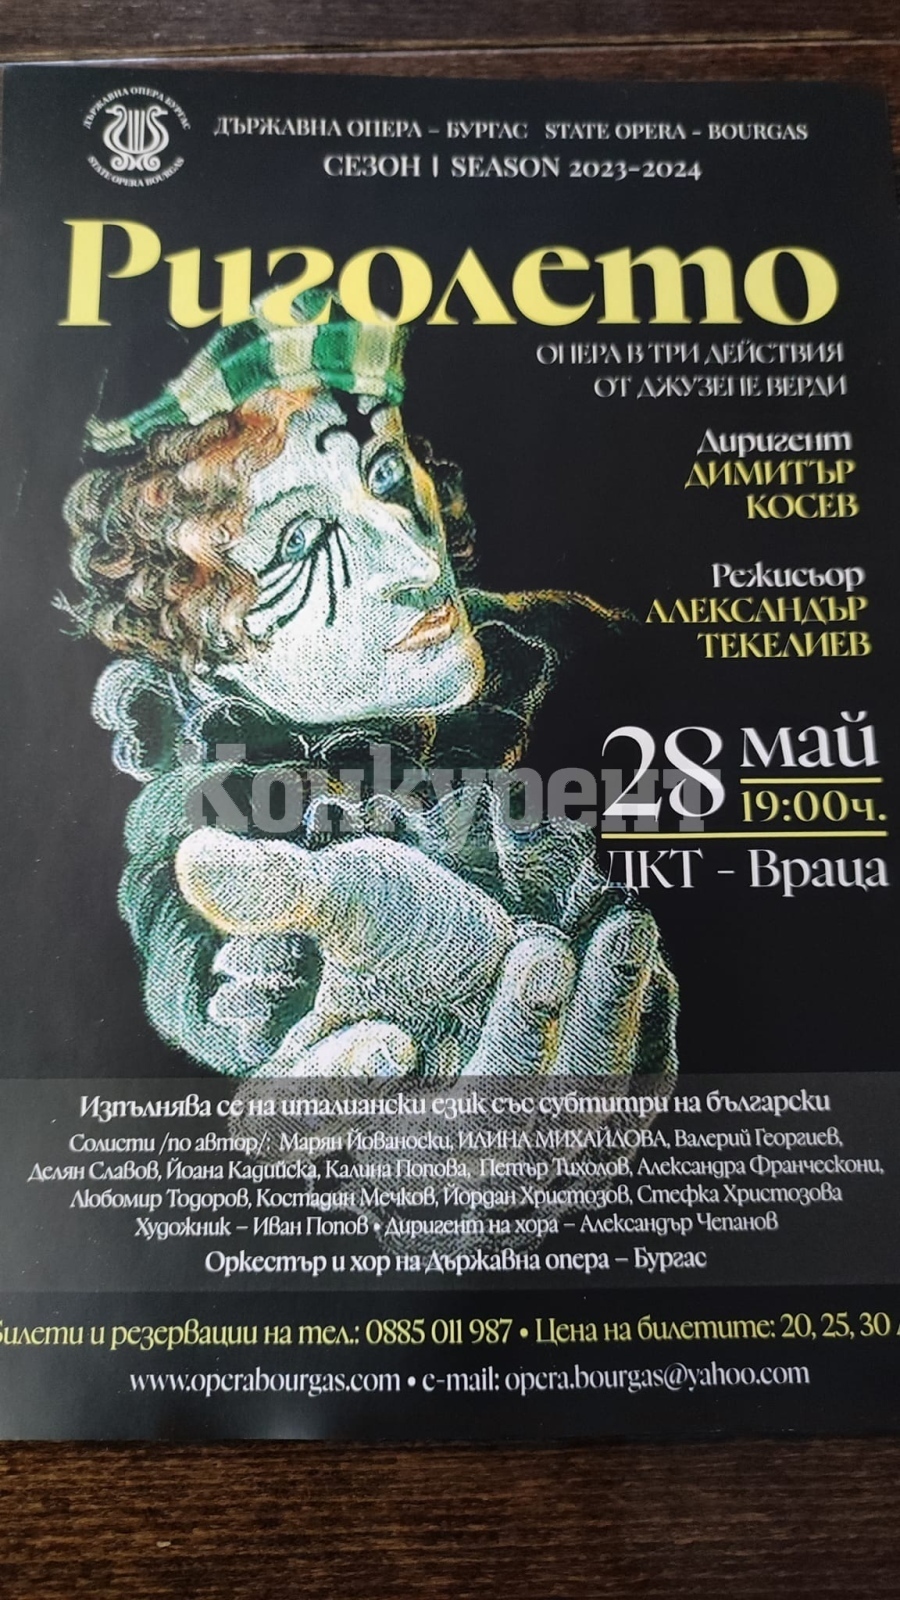 Нестандартният прочит на операта на Джузепе Верди „Риголето” ще се излъчи във Враца